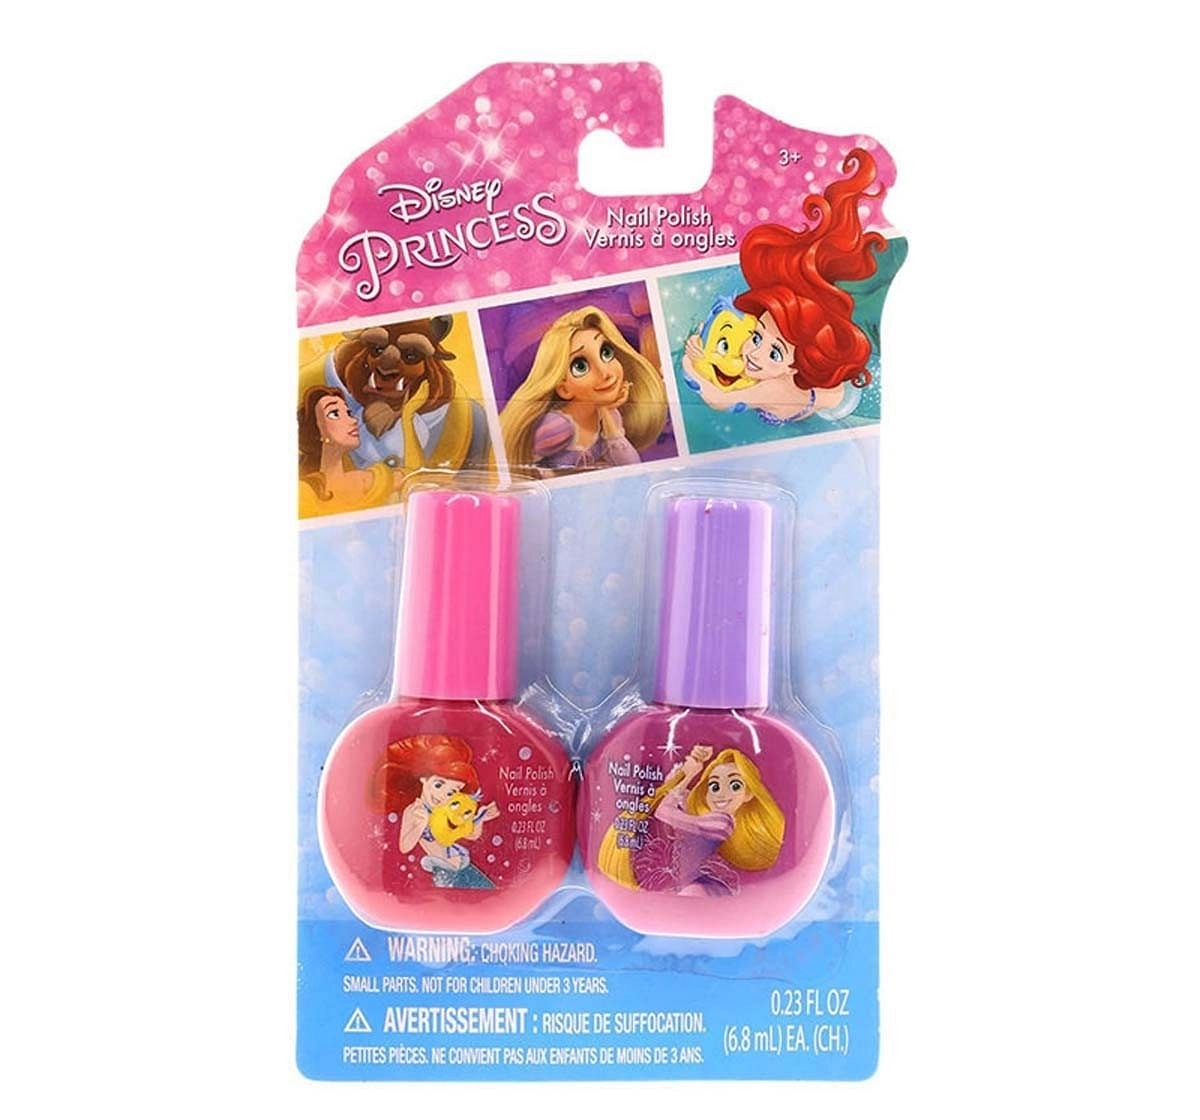 Townley Girl Disney Princess Nail Polish - Set Of 2 Pack Diy Art & Craft Kits for Kids Age 3Y+